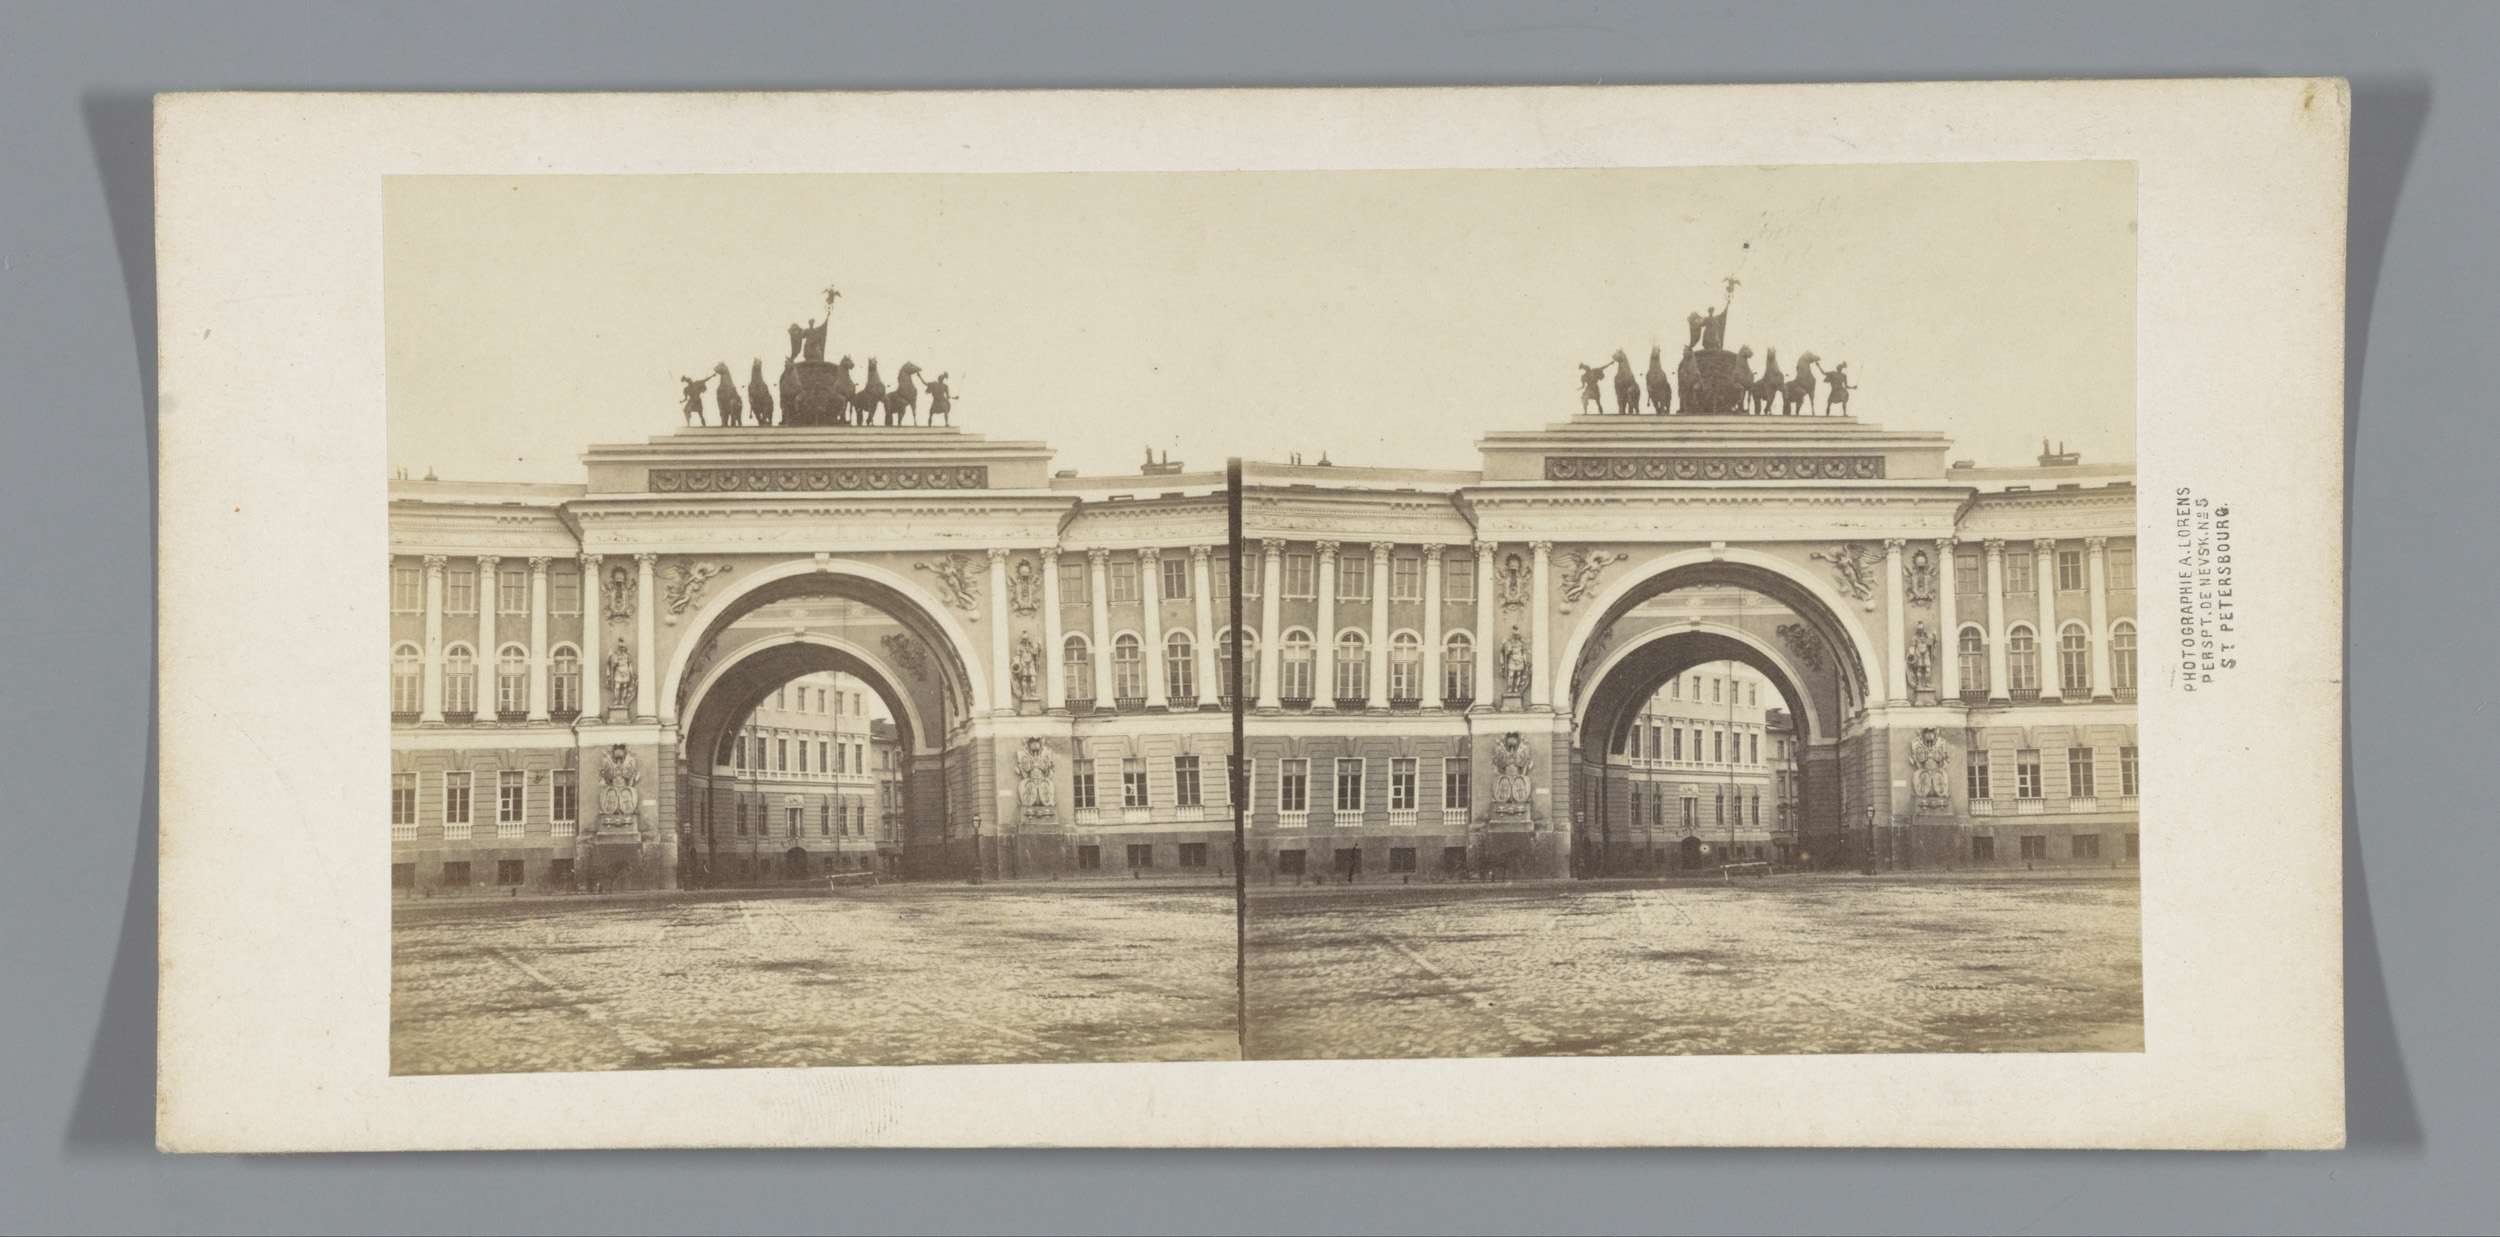 Gezicht op de triomfboog van het bouw voor de Generale Staf aan het Paleisplein in Sint-Petersburg